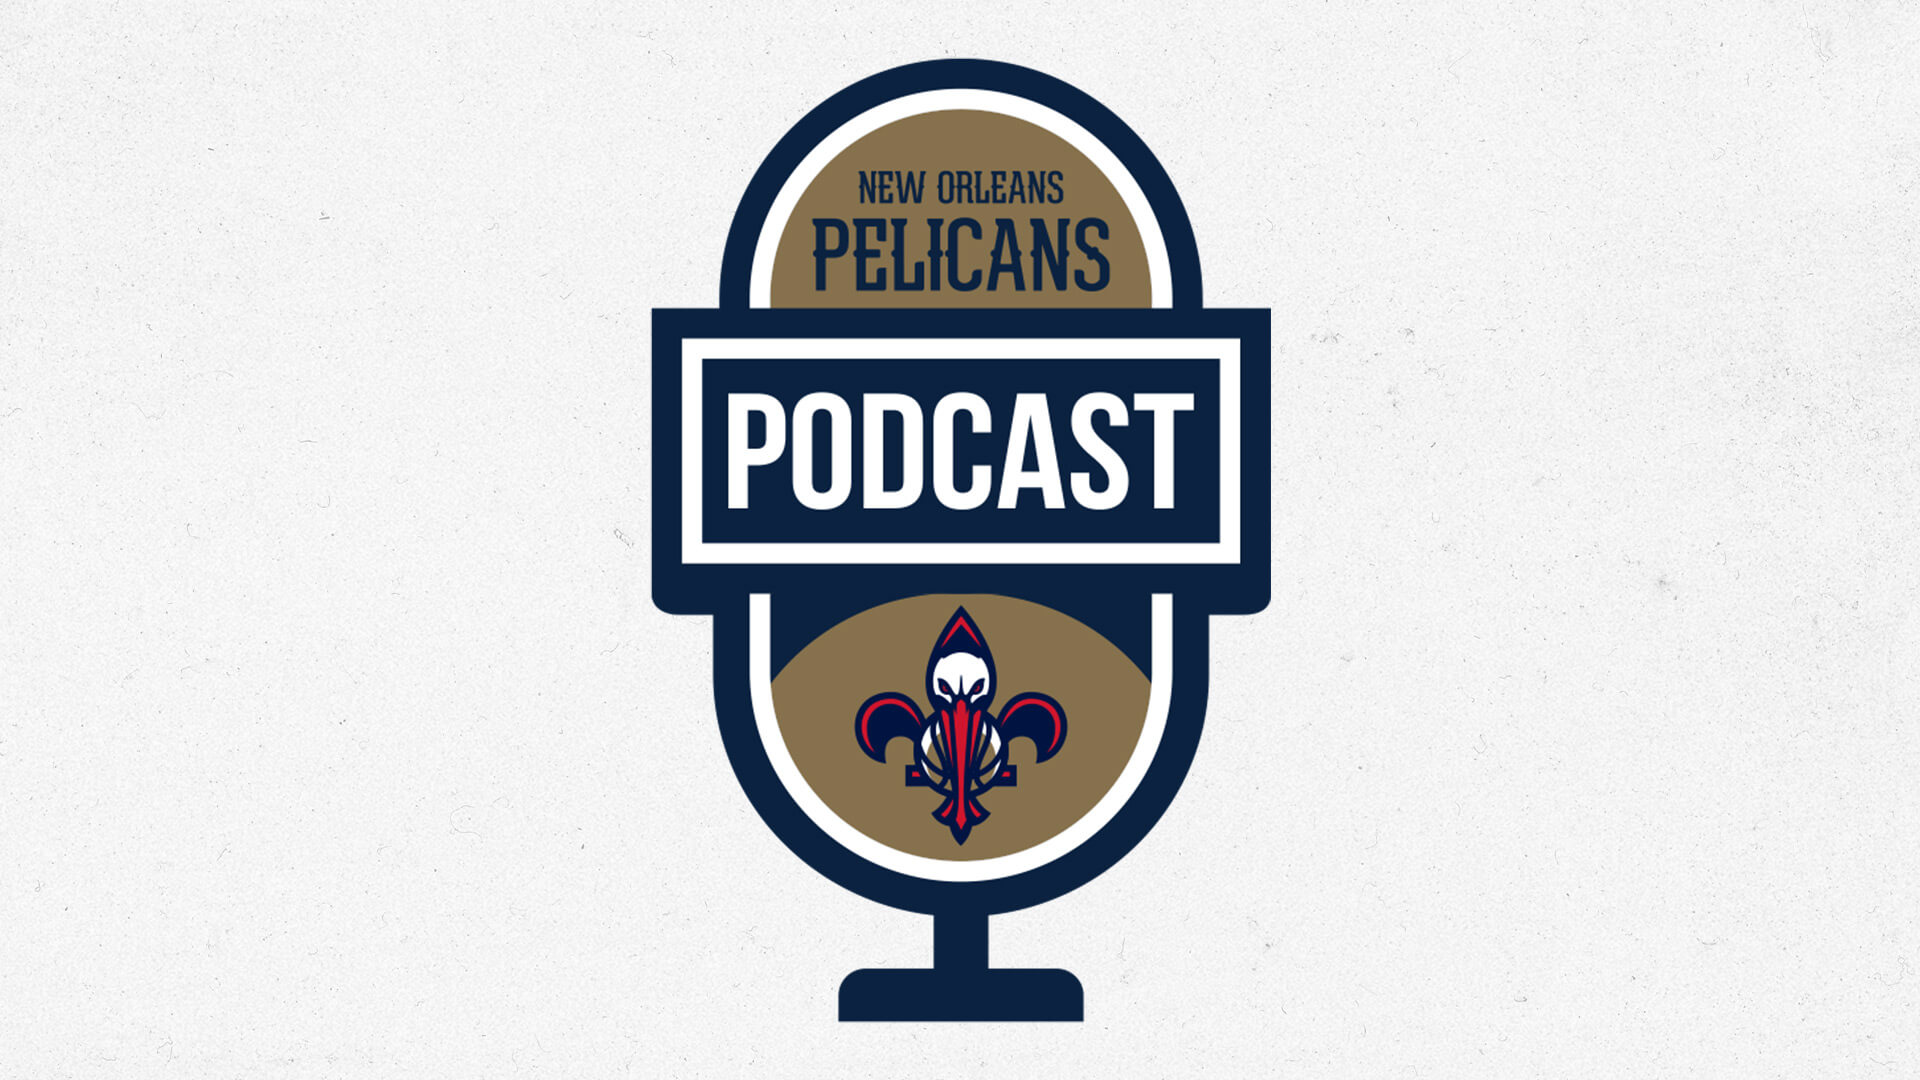 FOX 8's Madeline Adams talks local broadcasts, Pelicans' win streak | Pelicans Podcast